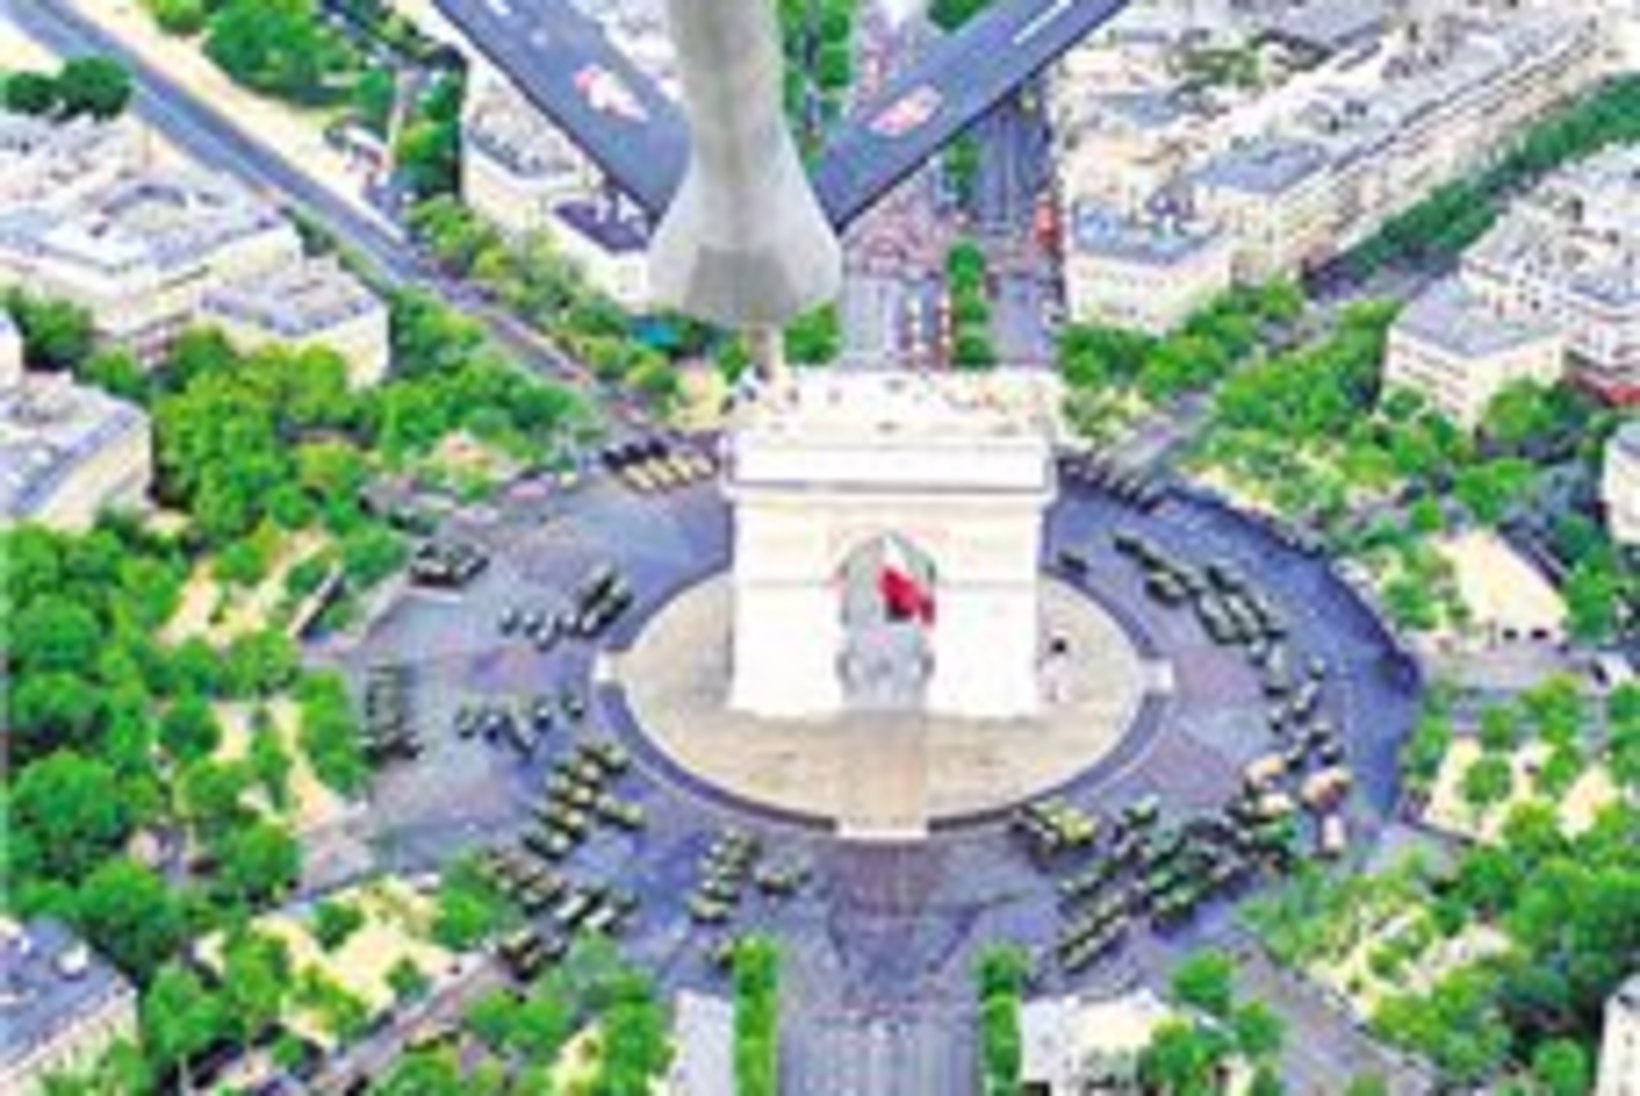 Kuidas Pariis sai maailmakuulsa triumfikaare